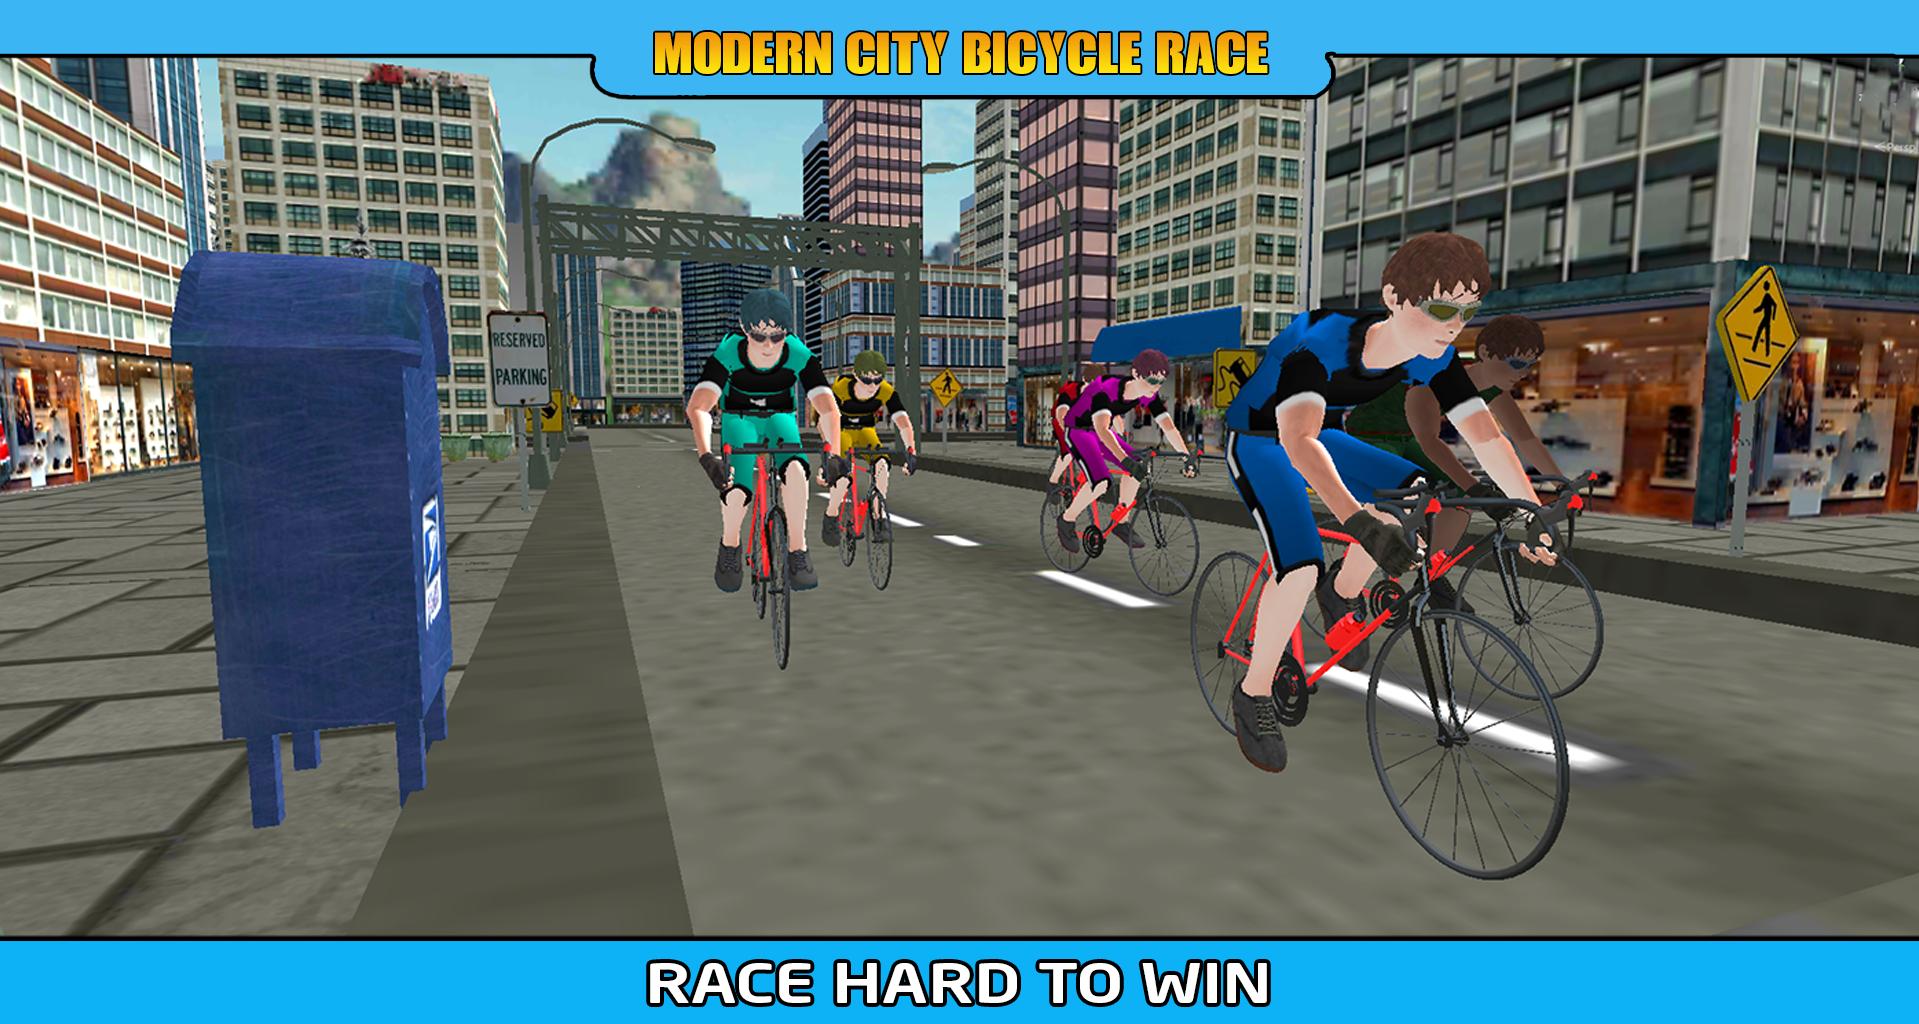 مدينة الحديثة دراجة سباق هوس - BMX الدراجة رايدر! for Android - APK Download